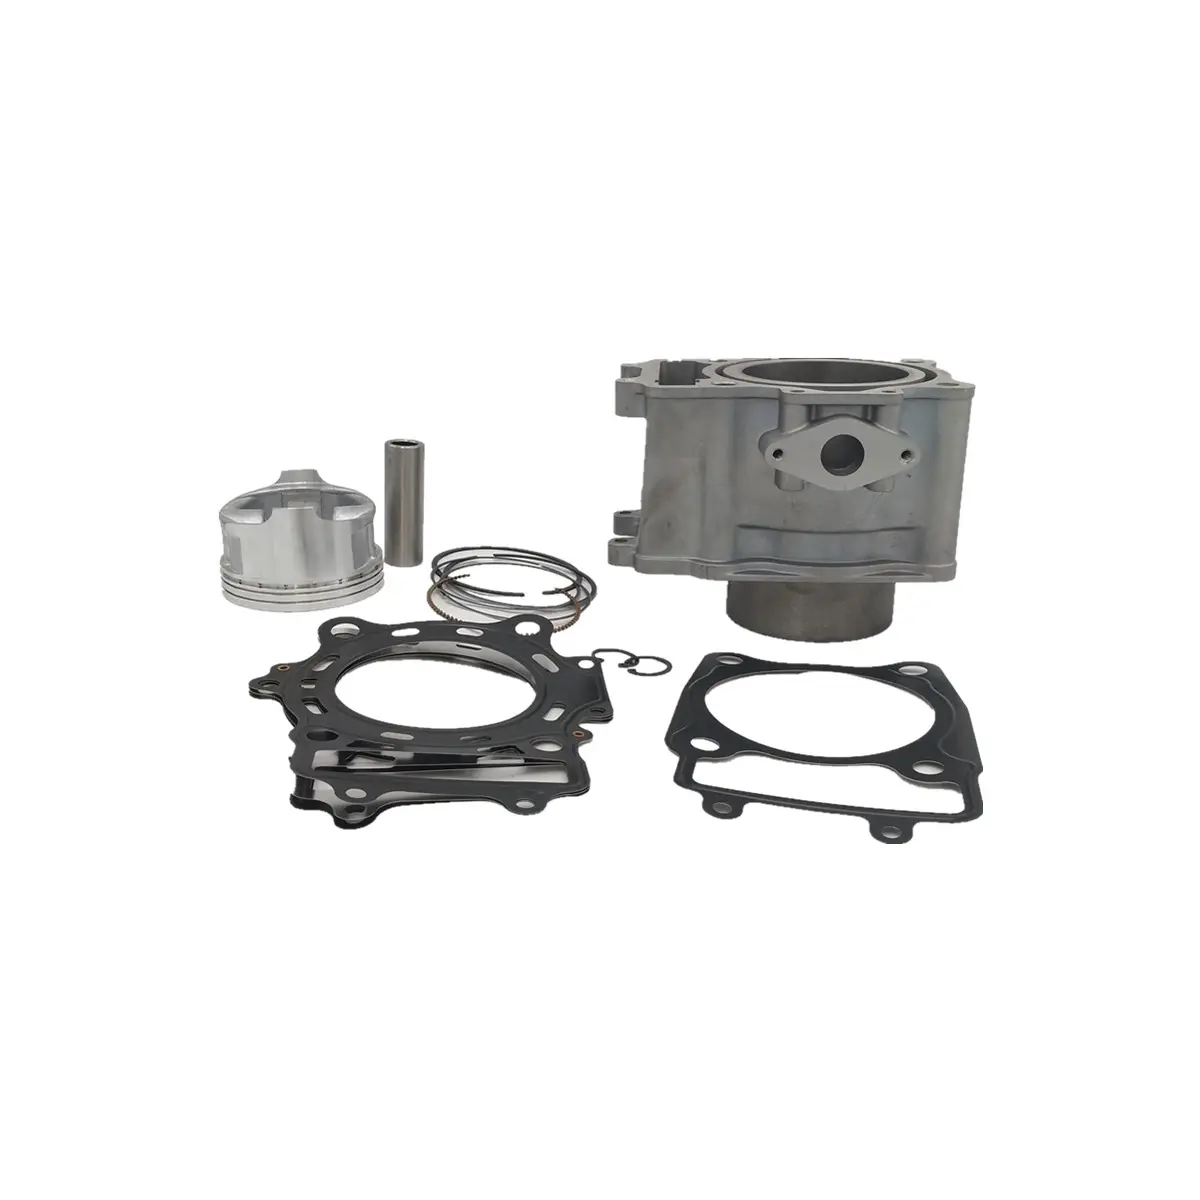 CF ATV pièces 87.5mm cylindre Piston joint bloc Kit 500CC CF188 CF500 KQ-28 4x4 atv/utv pièces et accessoires